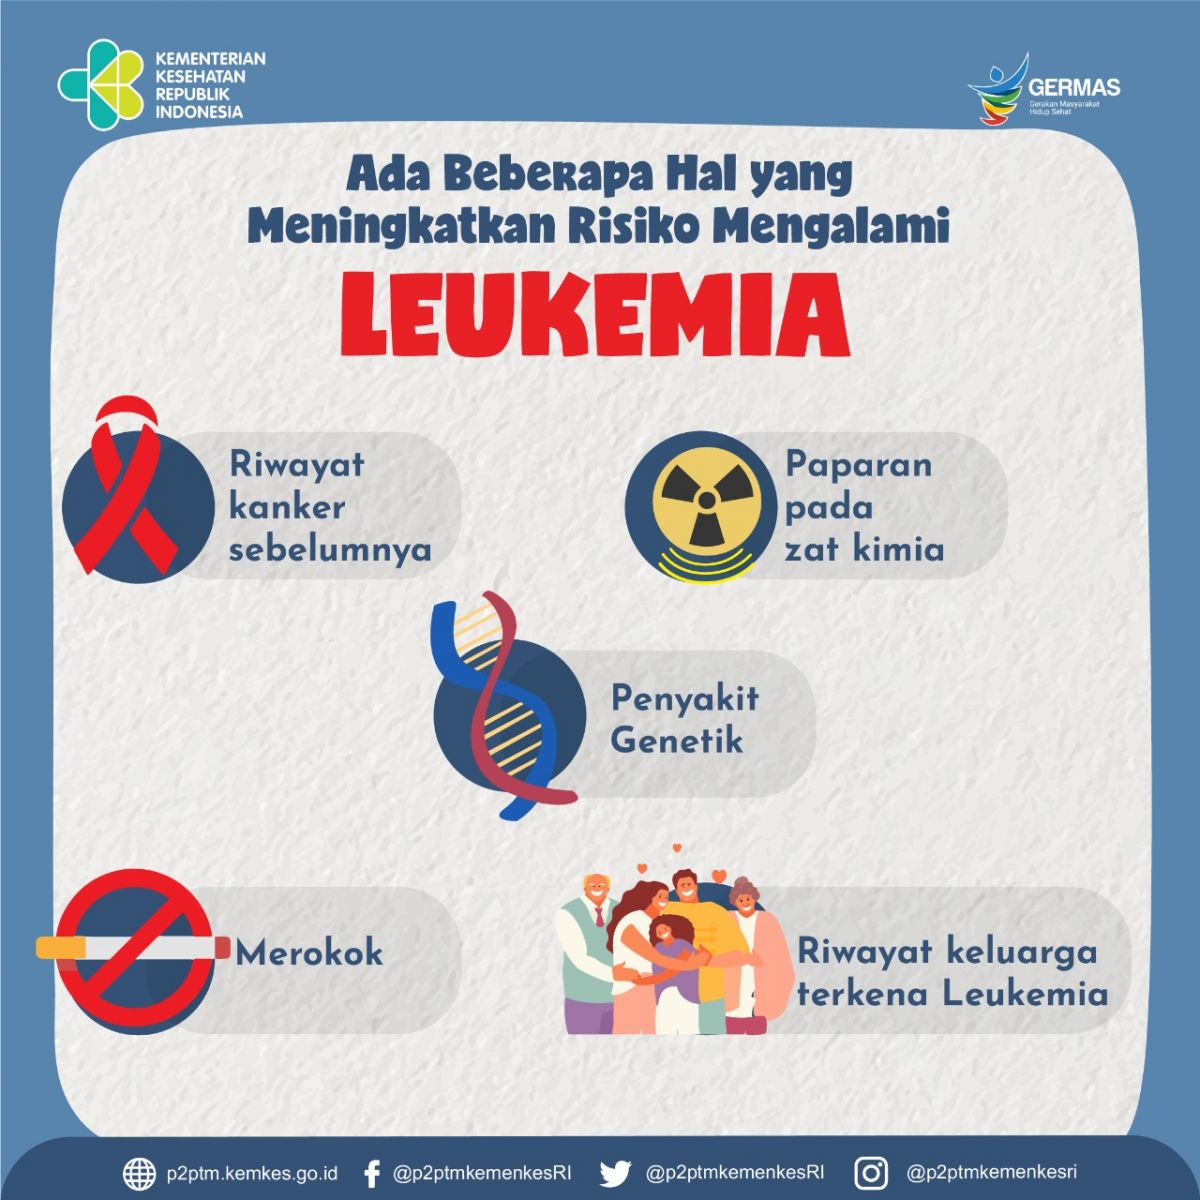 Beberapa hal yang meningkatkan risiko mengalami Leukemia.